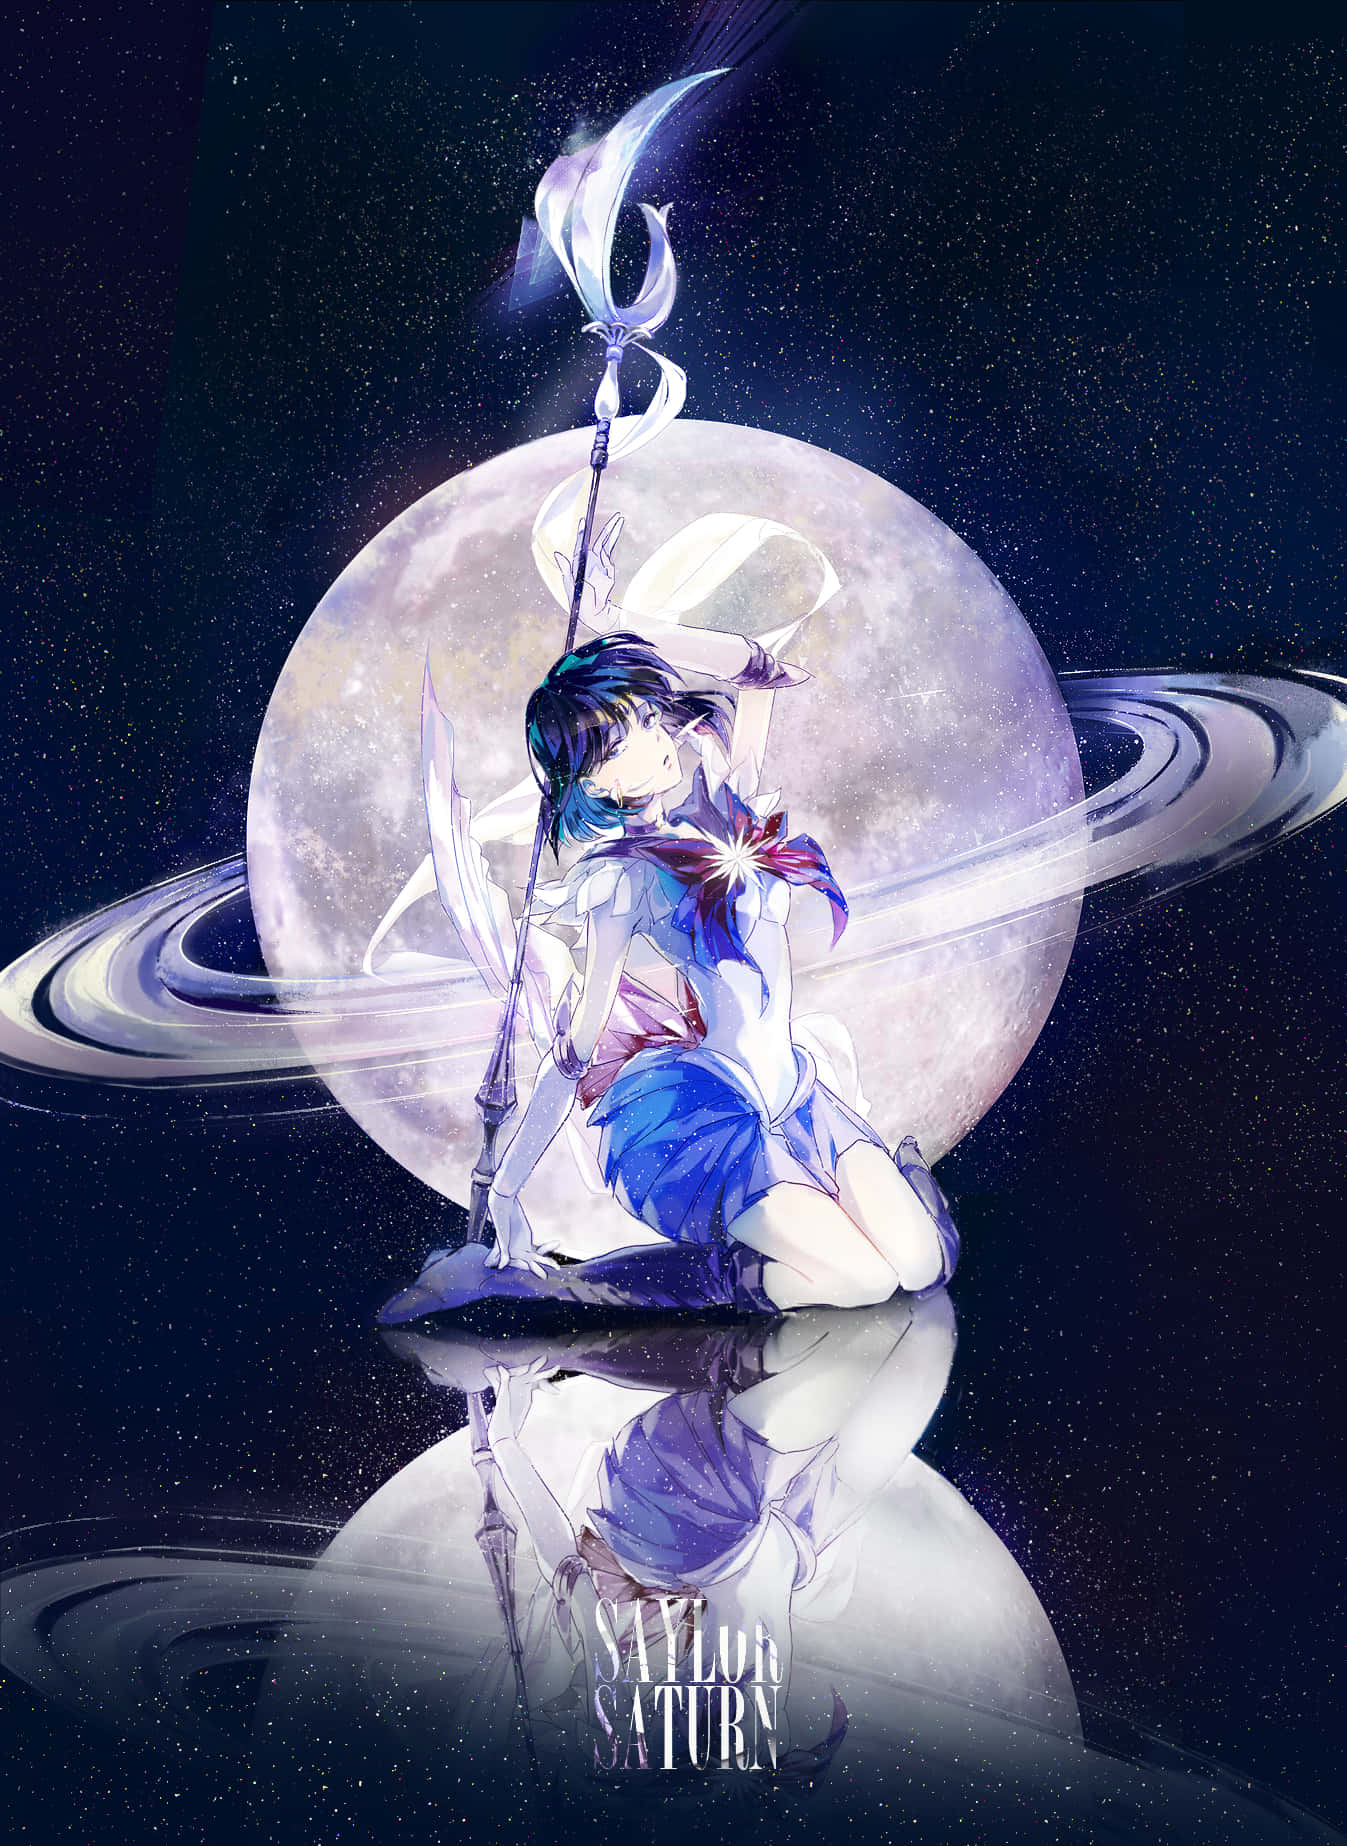 Usurper of Silence and Destruction, Sailor Saturn! Wallpaper